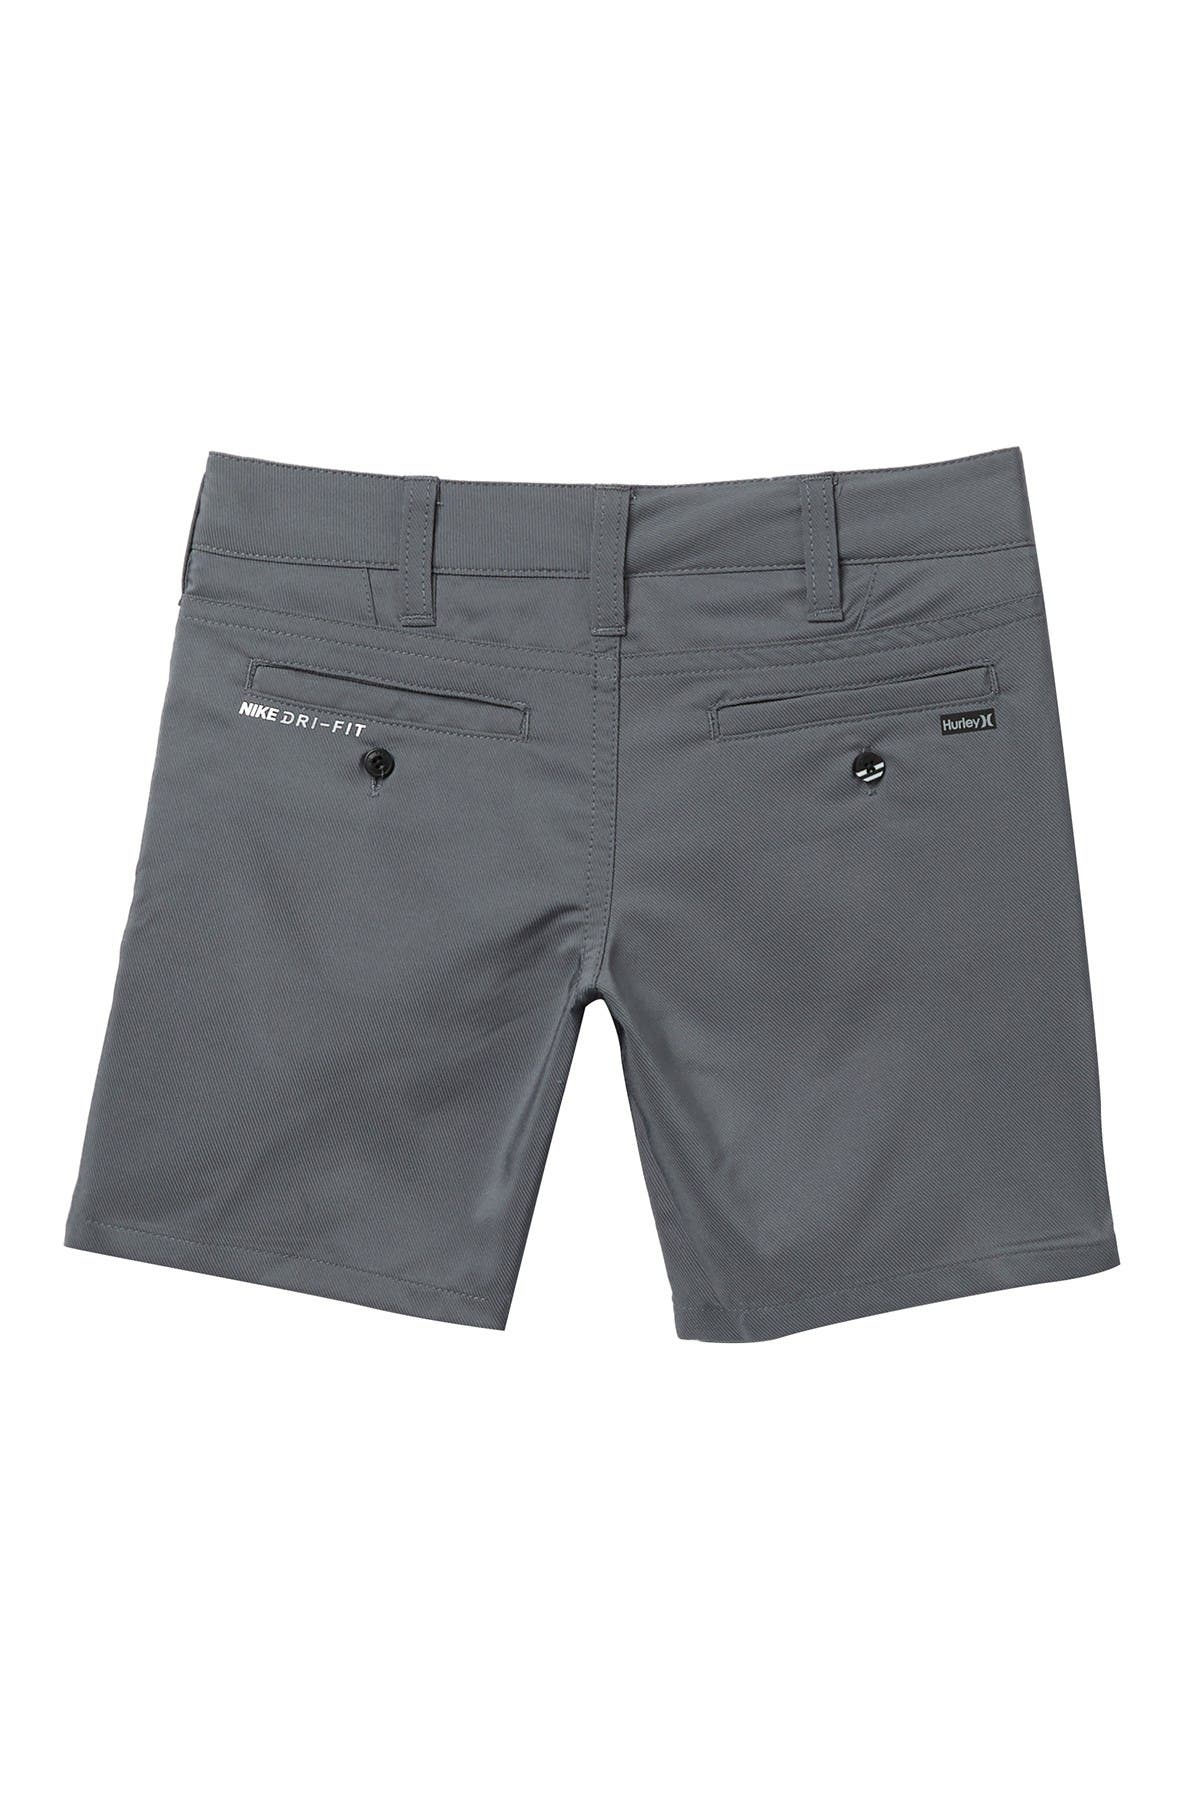 Hurley Kids' Dri-fit Chino Walk Shorts In Medium Grey1